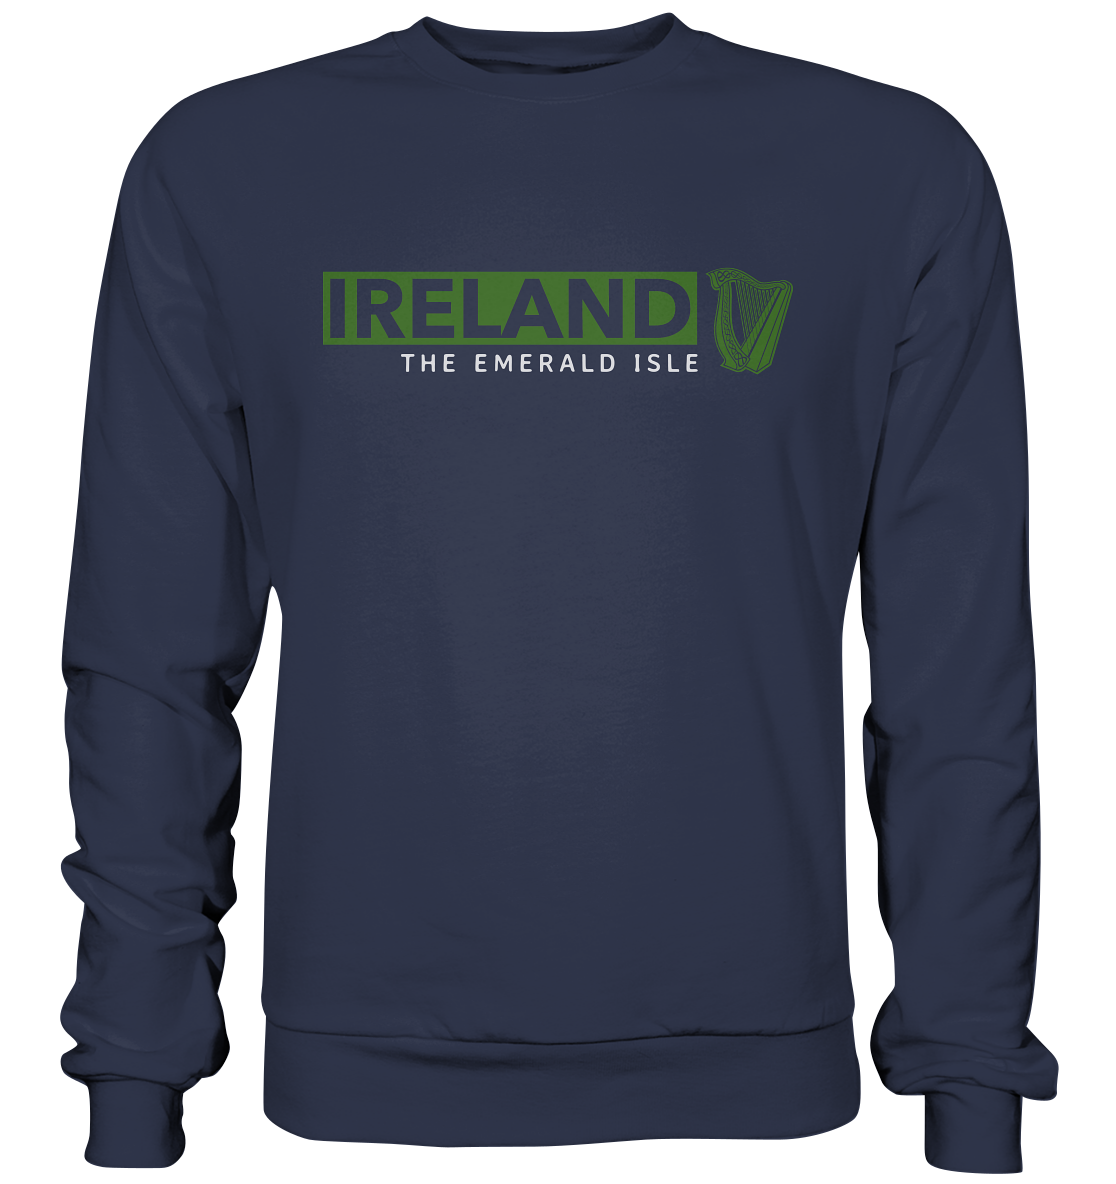 Ireland "The Emerald Isle / Harp" - Premium Sweatshirt